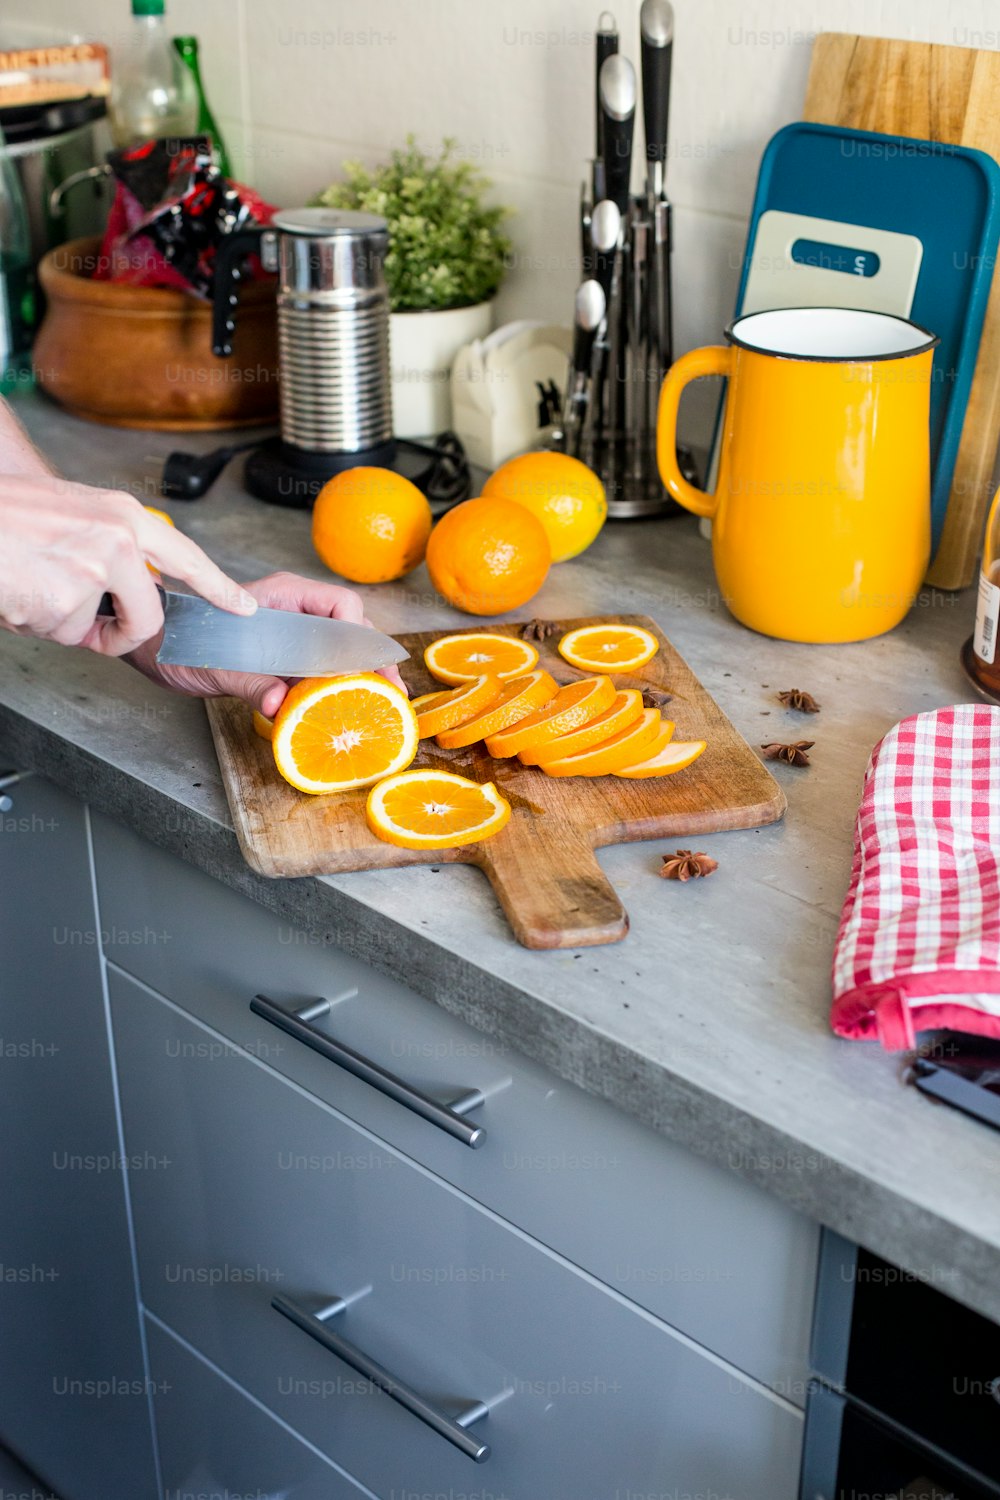 Una persona cortando naranjas en una tabla de cortar